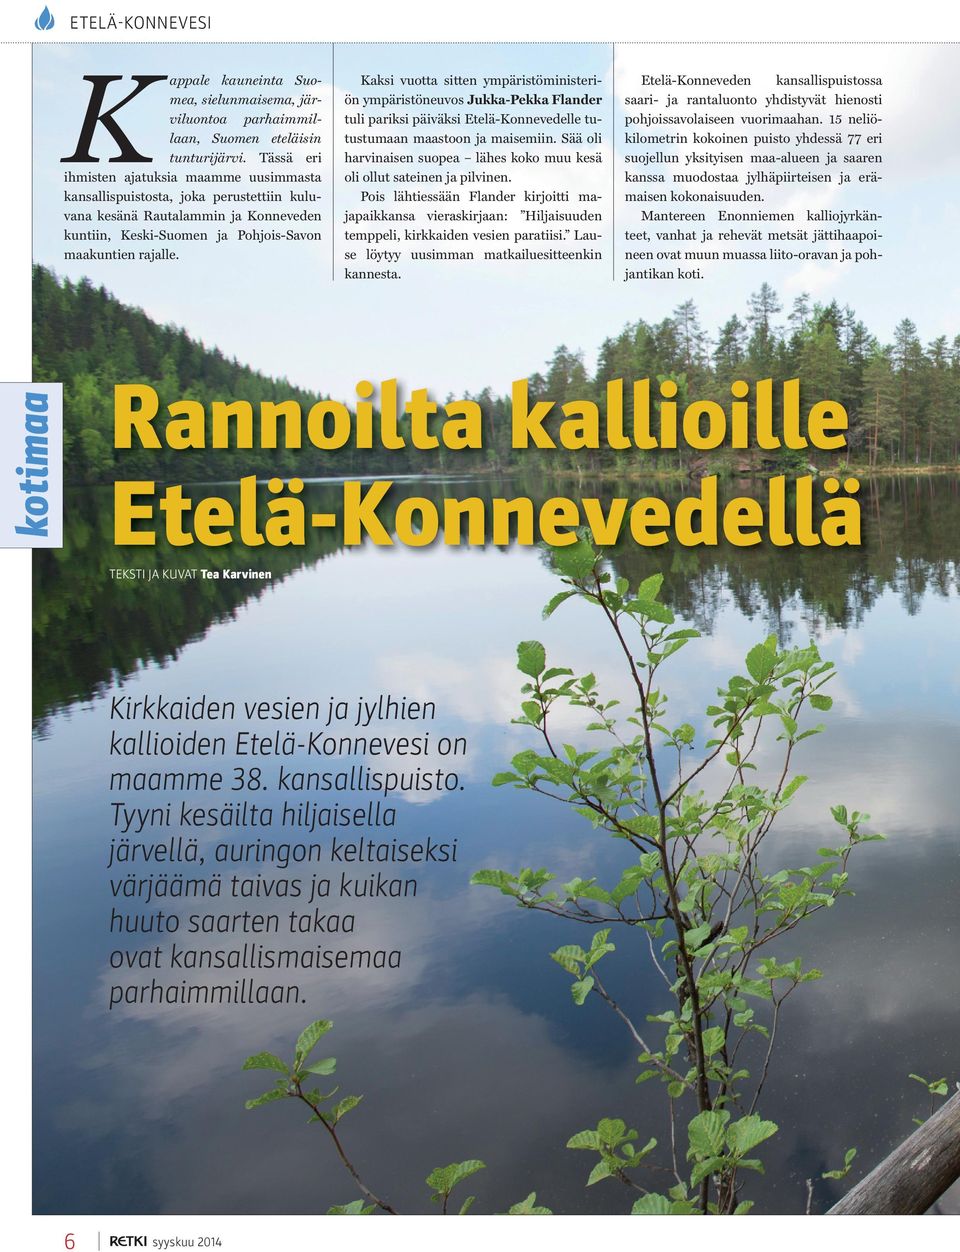 Kaksi vuotta sitten ympäristöministeriön ympäristöneuvos Jukka-Pekka Flander tuli pariksi päiväksi Etelä-Konnevedelle tutustumaan maastoon ja maisemiin.